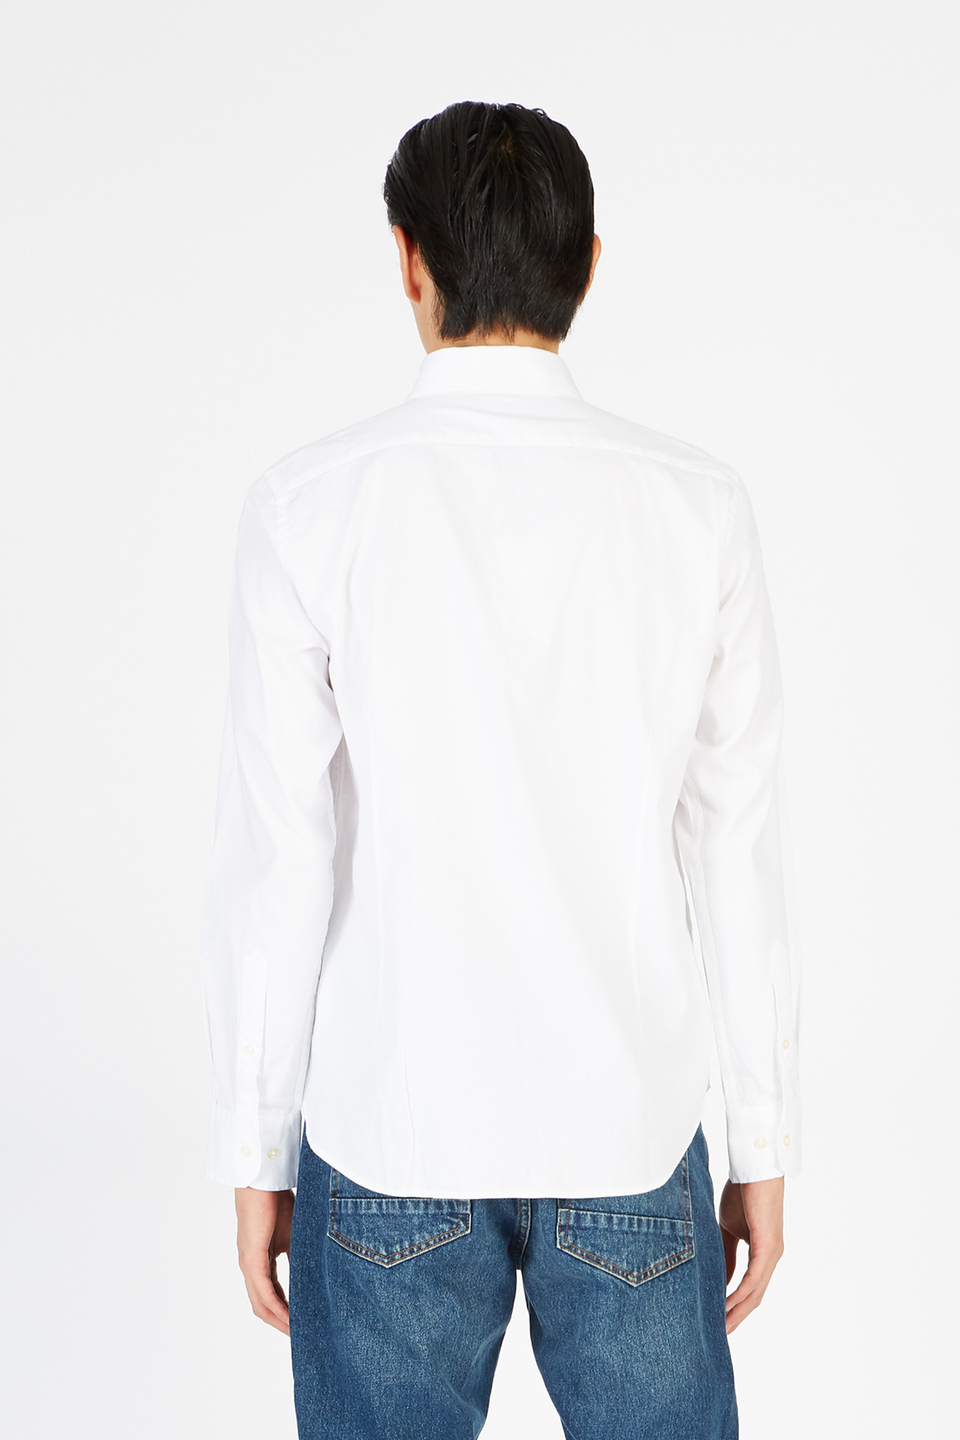 Men's shirt regular fit - La Martina - Official Online Shop